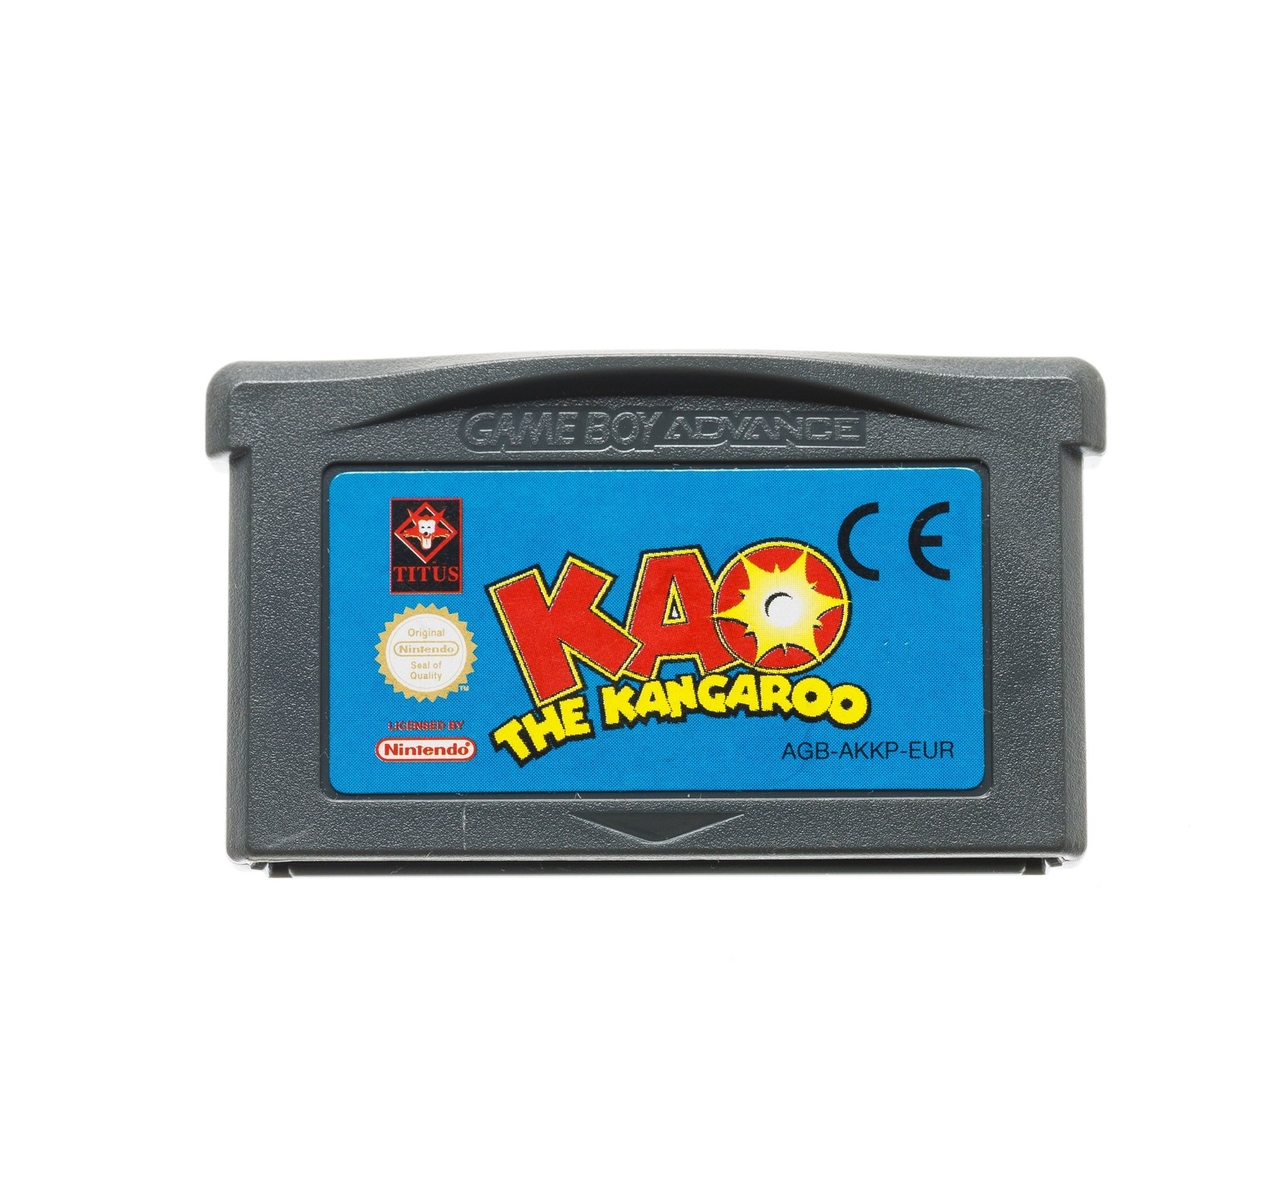 KAO The Kangaroo - Gameboy Advance Games